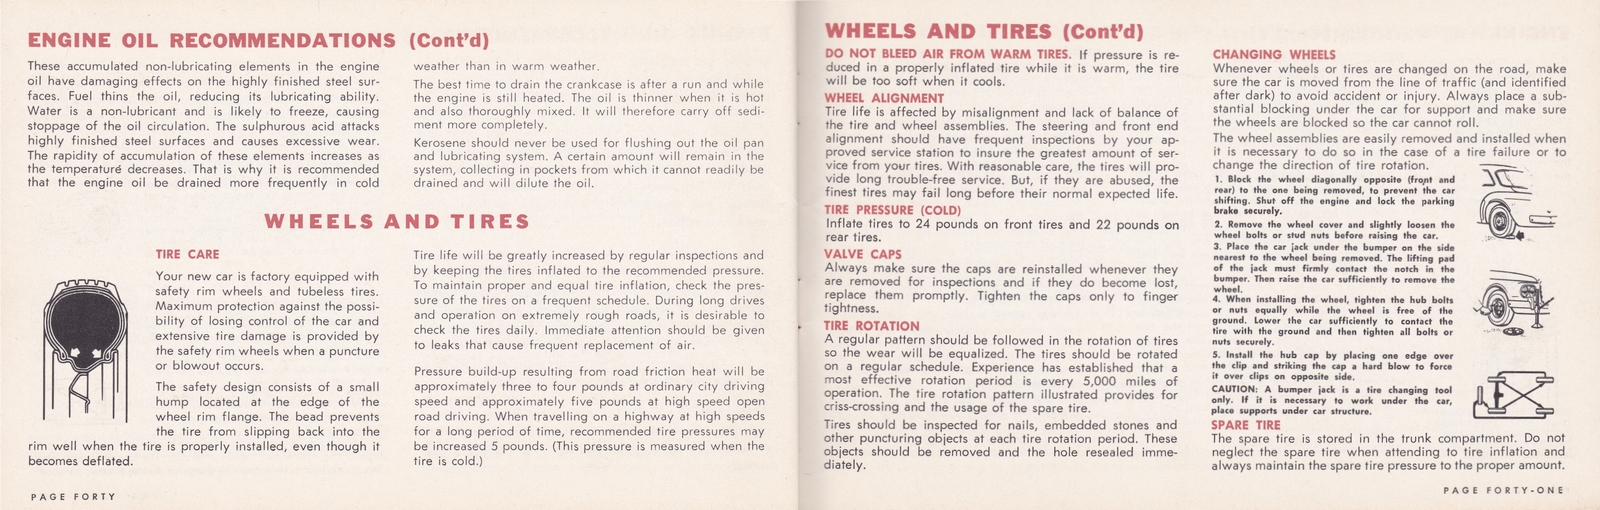 n_1964 Chrysler Owner's Manual (Cdn)-40-41.jpg